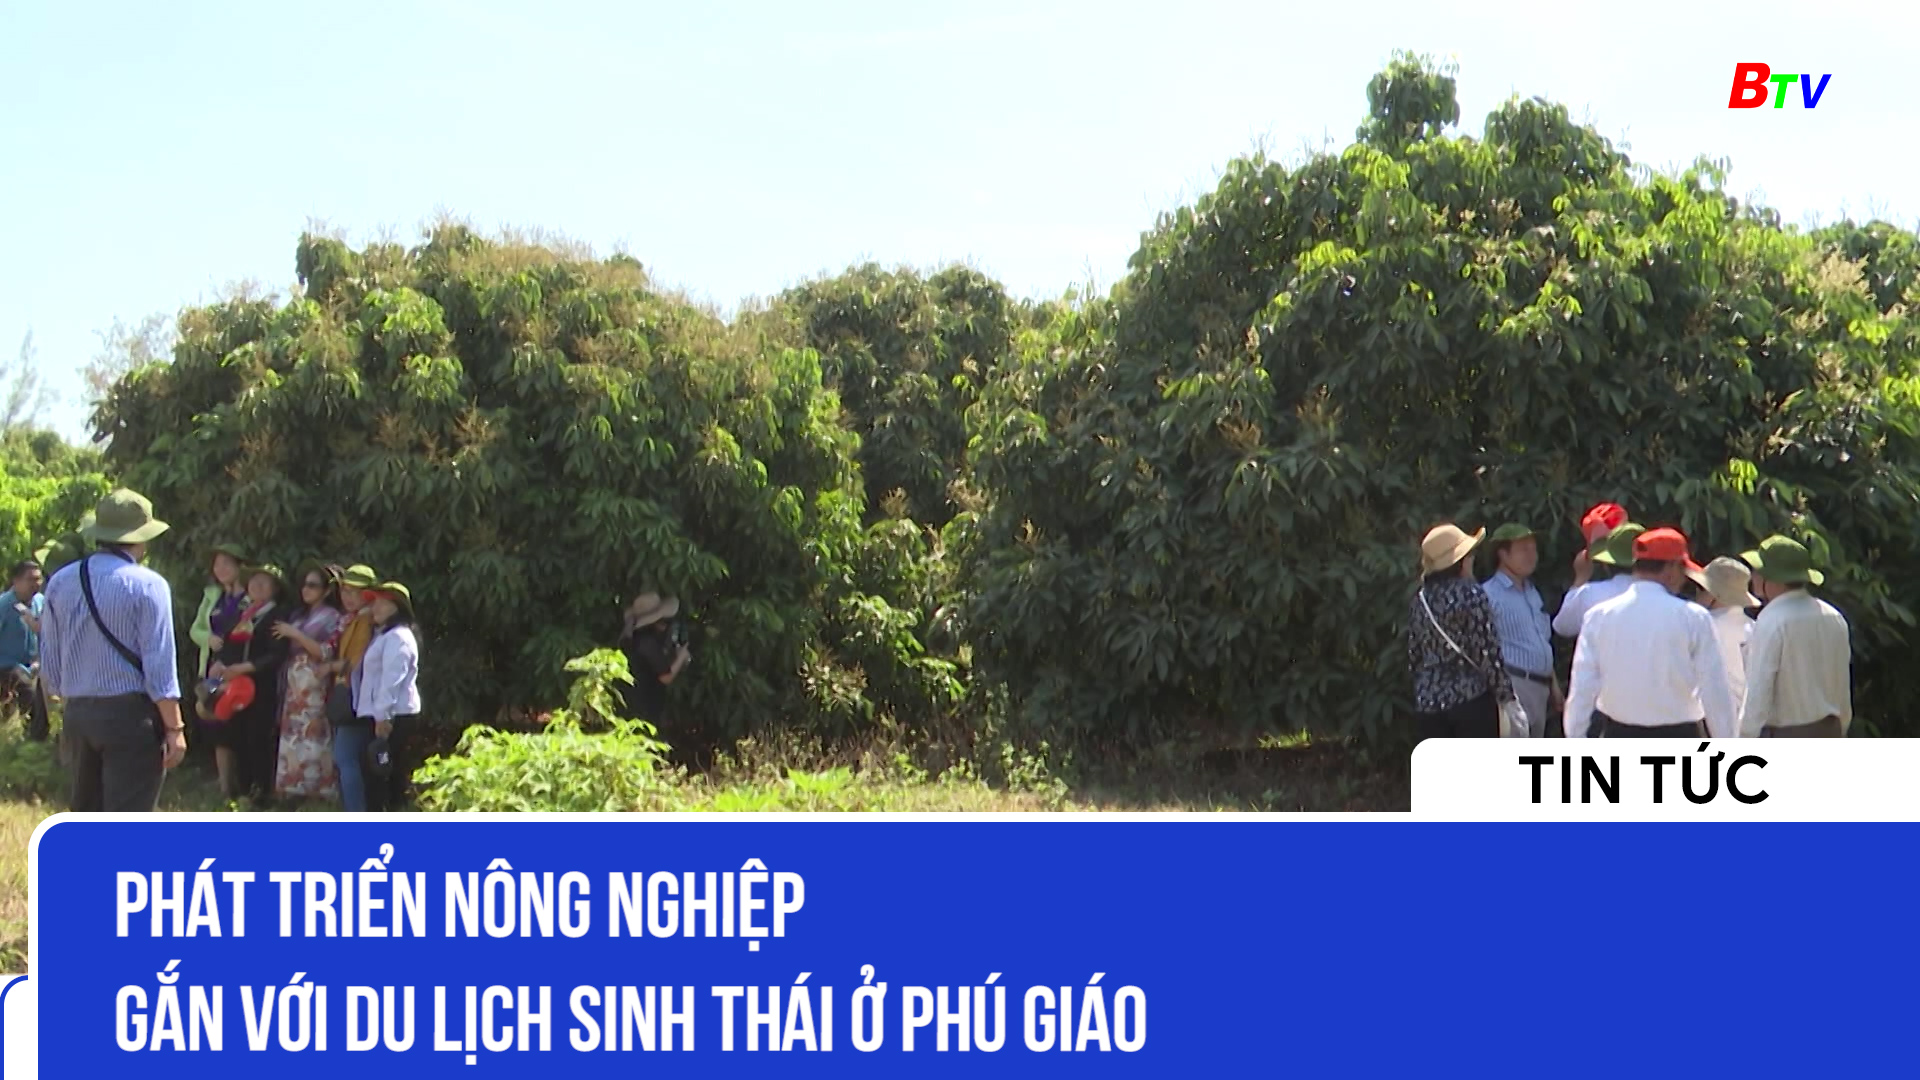 Phát triển nông nghiệp gắn với du lịch sinh thái ở Phú Giáo